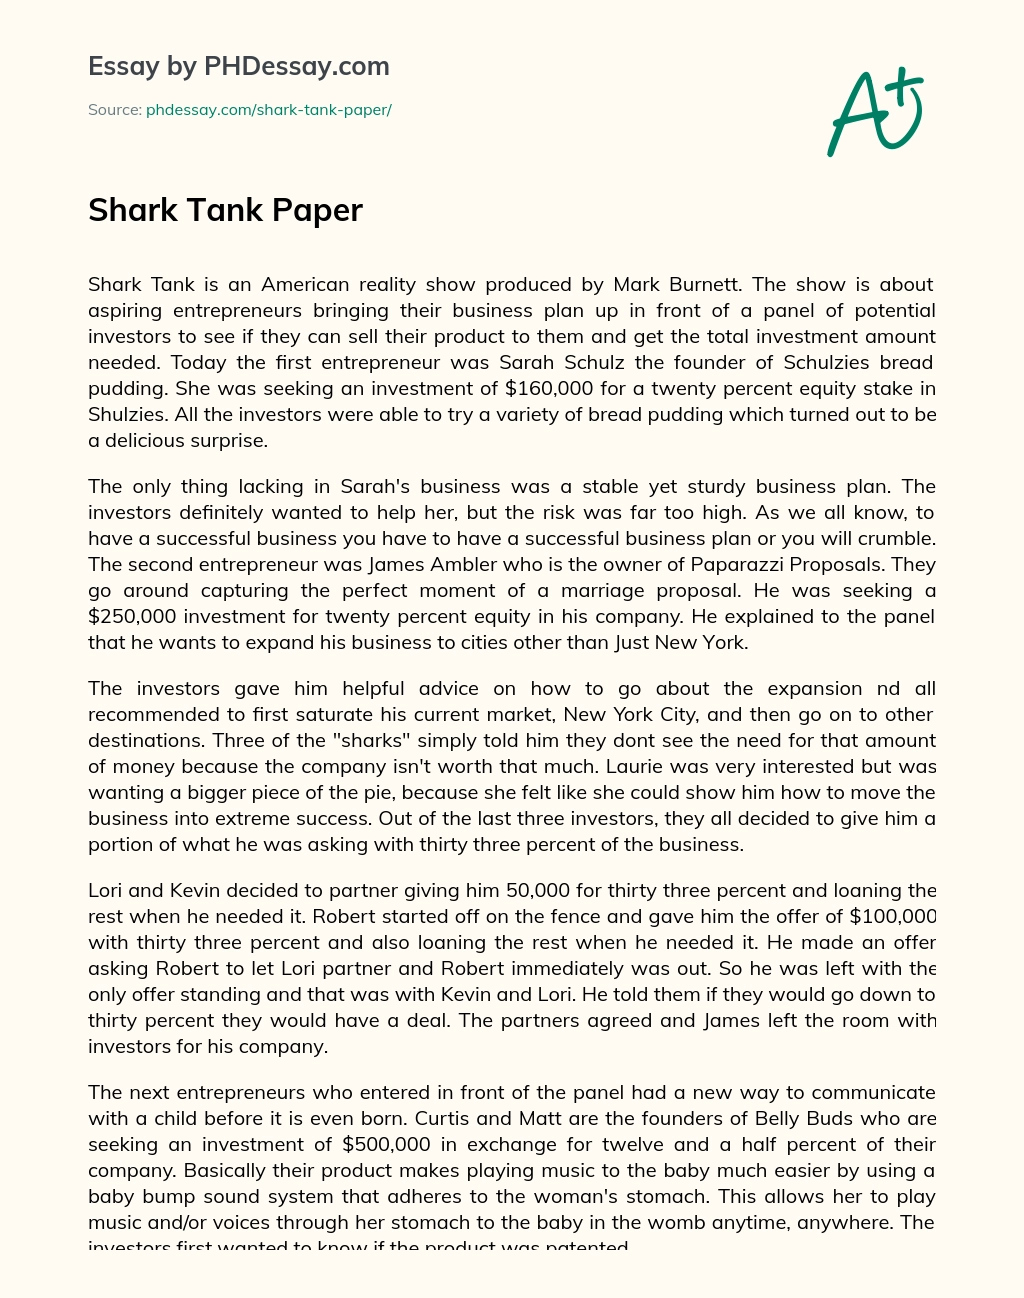 Shark Tank Paper essay